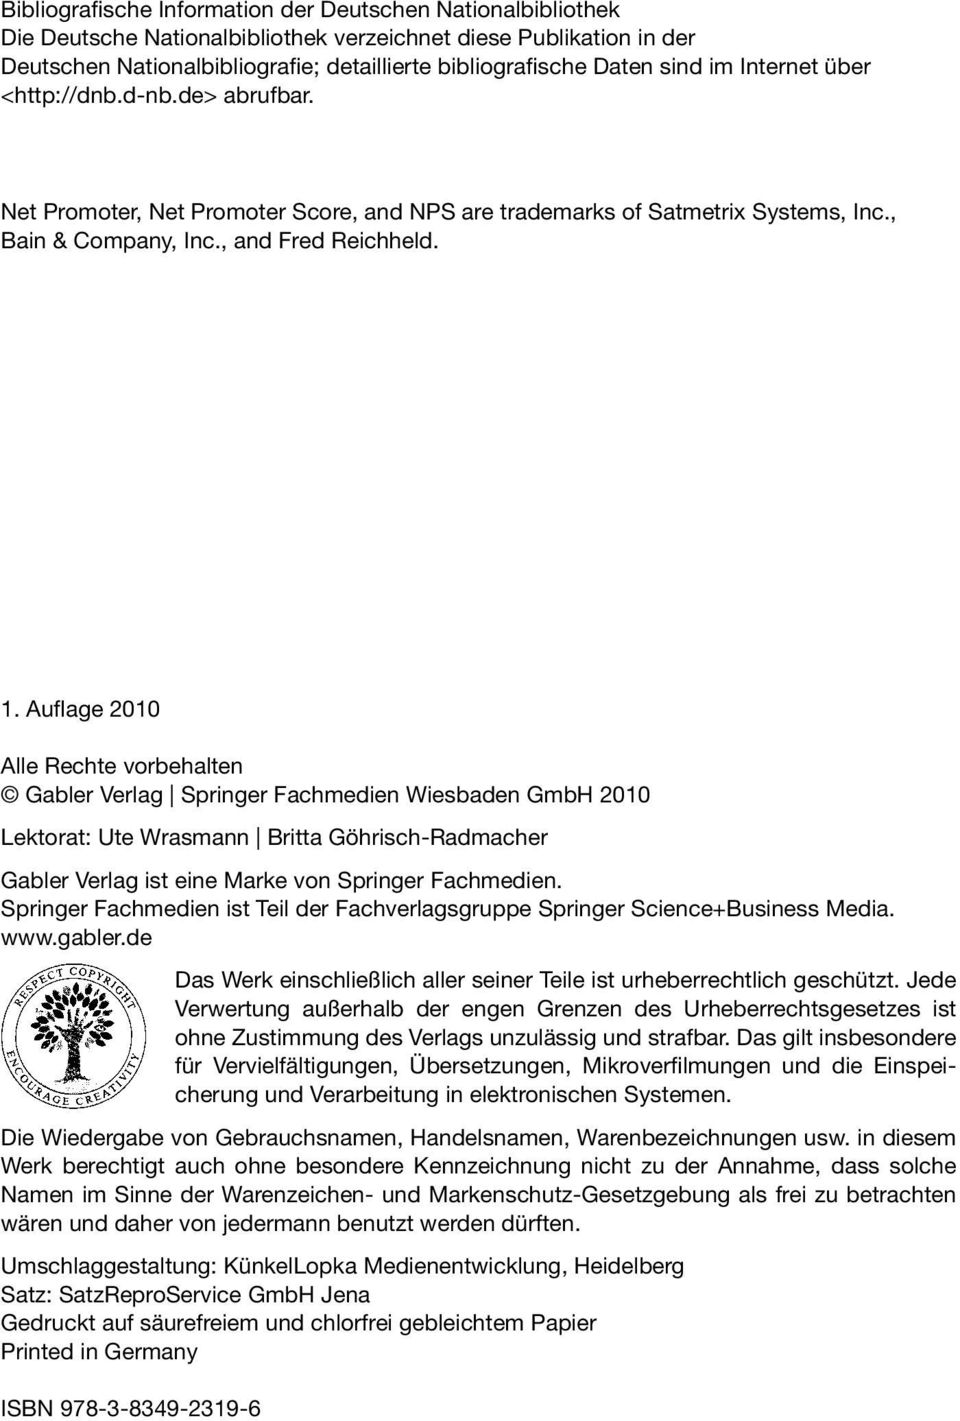 Auflage 2010 Alle Rechte vorbehalten Gabler Verlag Springer Fachmedien Wiesbaden GmbH 2010 Lektorat: Ute Wrasmann Britta Göhrisch-Radmacher Gabler Verlag ist eine Marke von Springer Fachmedien.